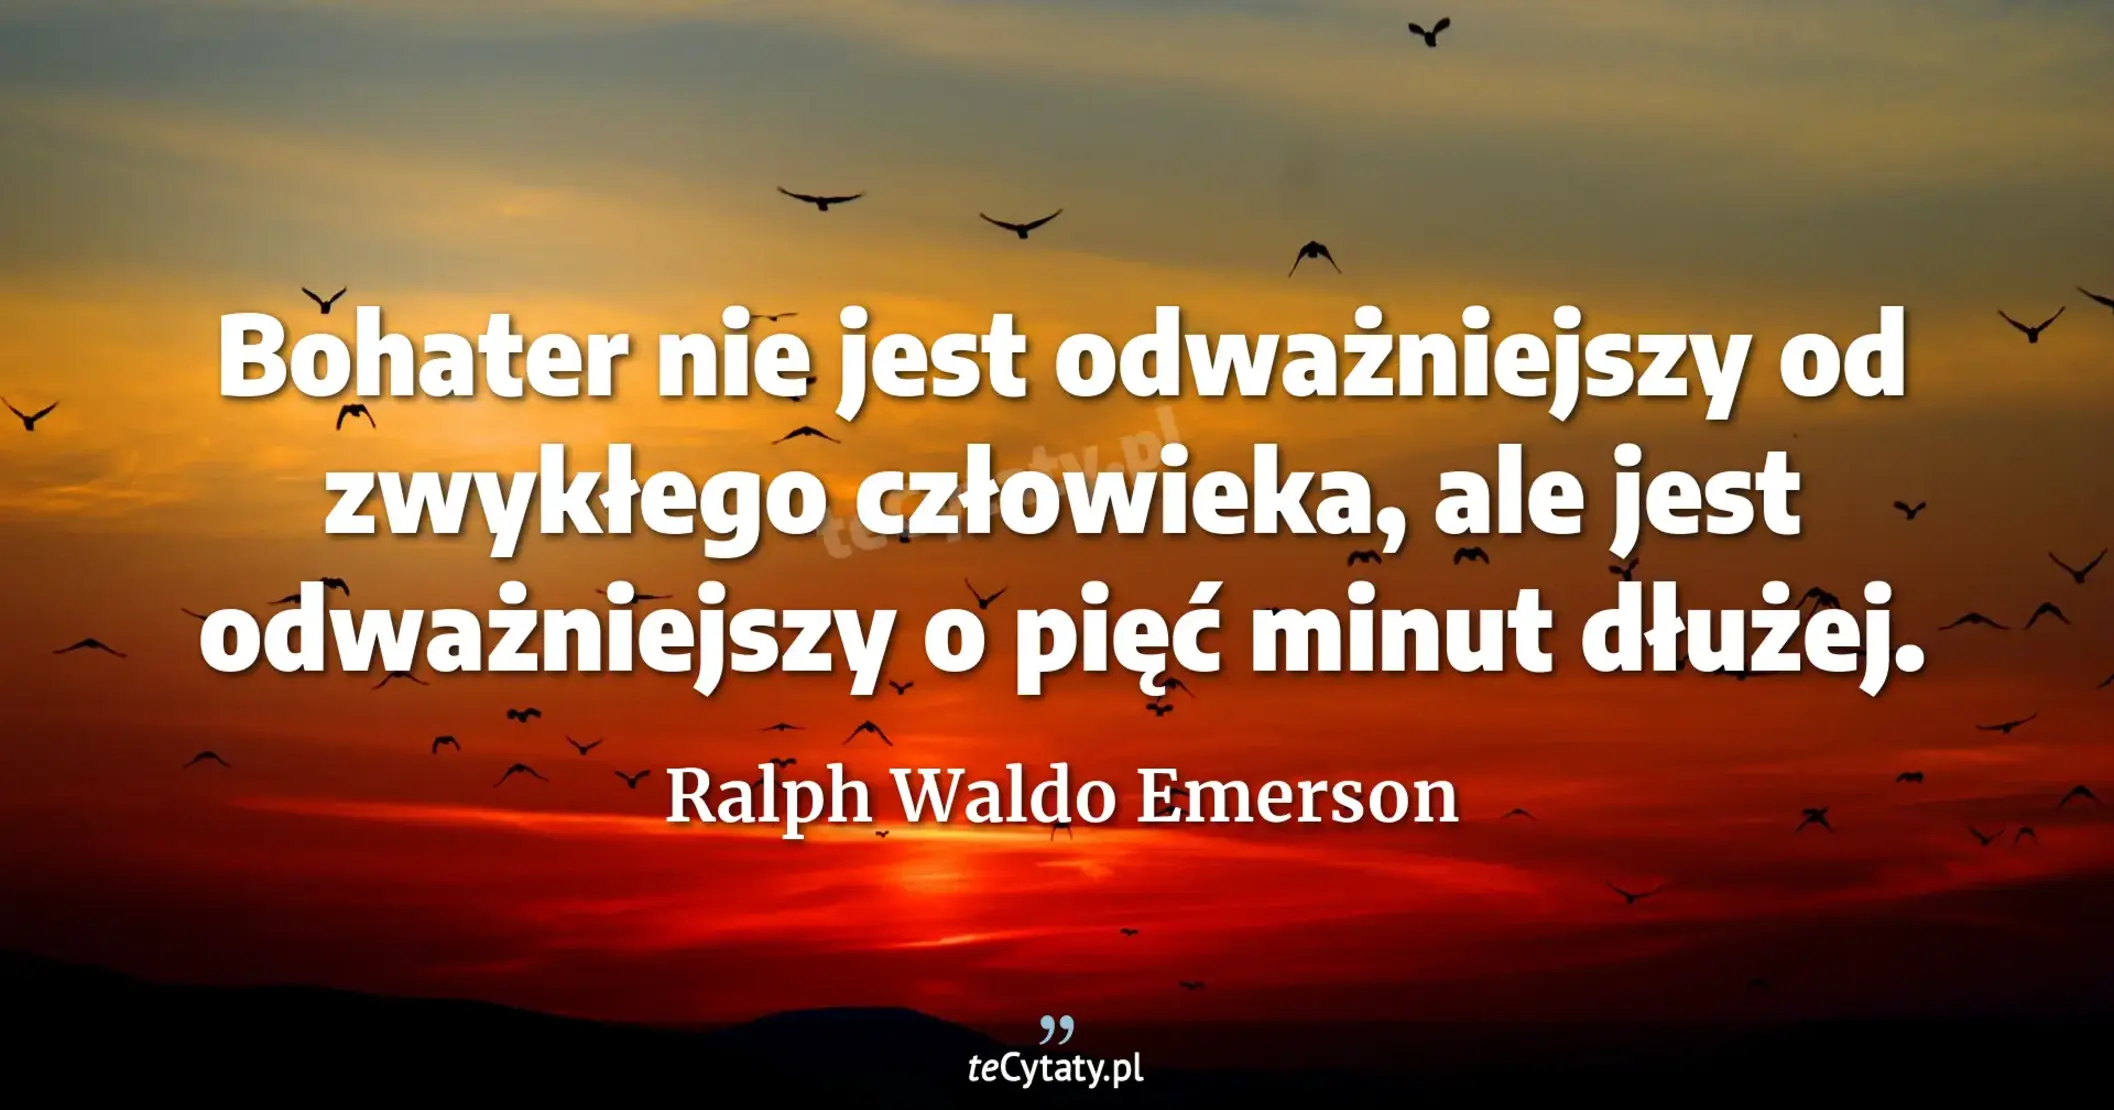 Bohater nie jest odważniejszy od zwykłego człowieka, ale jest odważniejszy o pięć minut dłużej. - Ralph Waldo Emerson